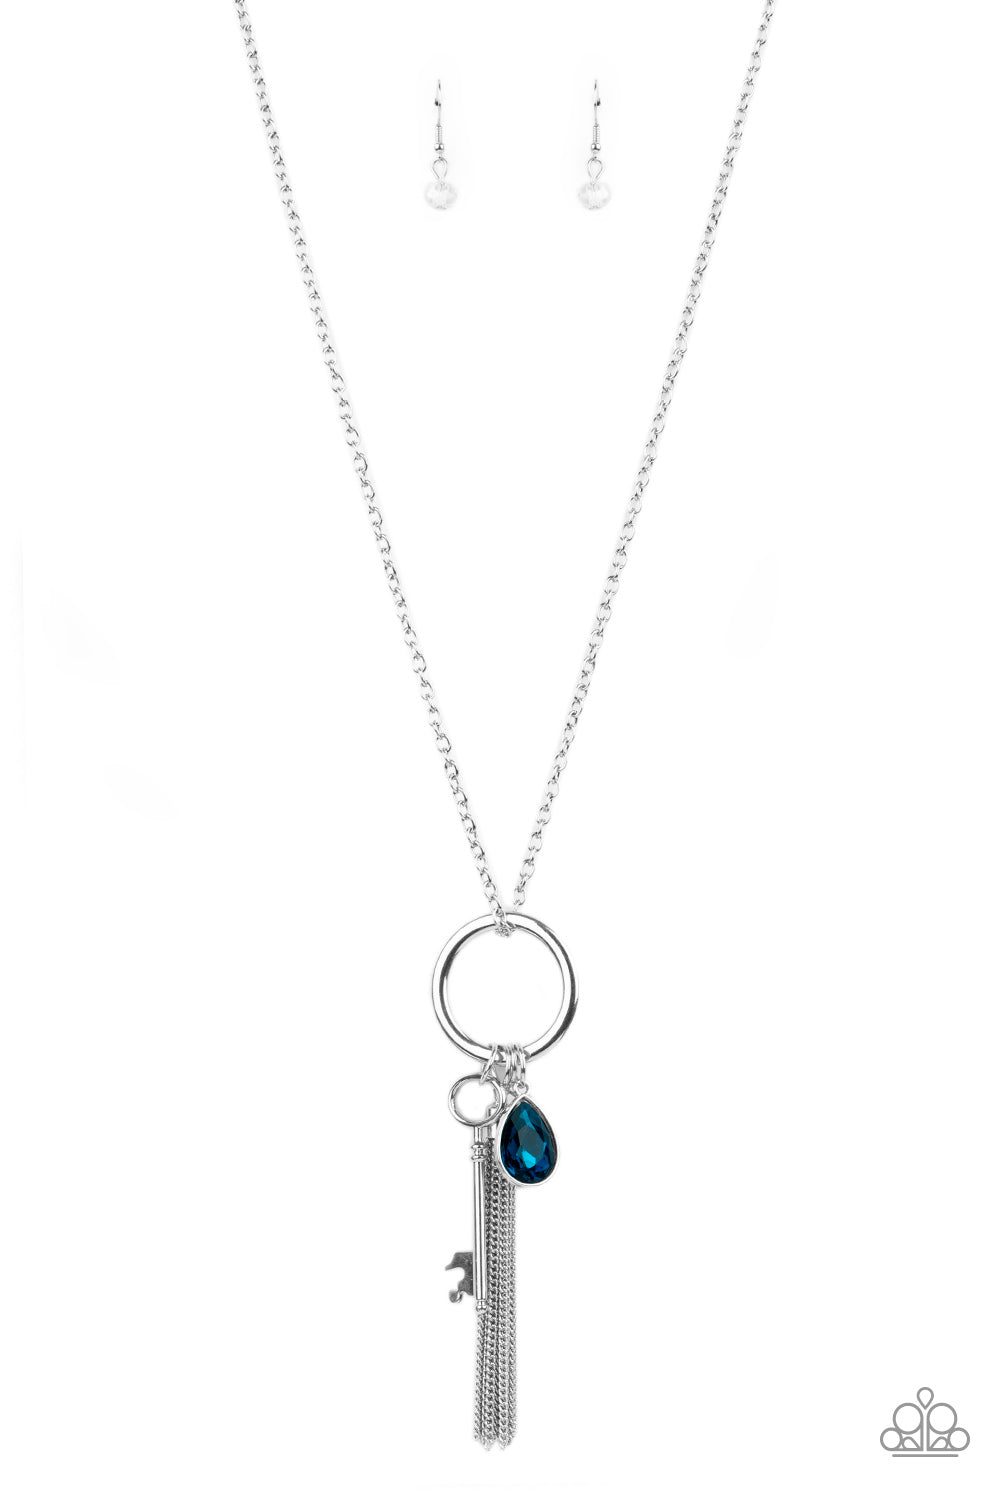 Unlock Your Sparkle - Blue necklace 665